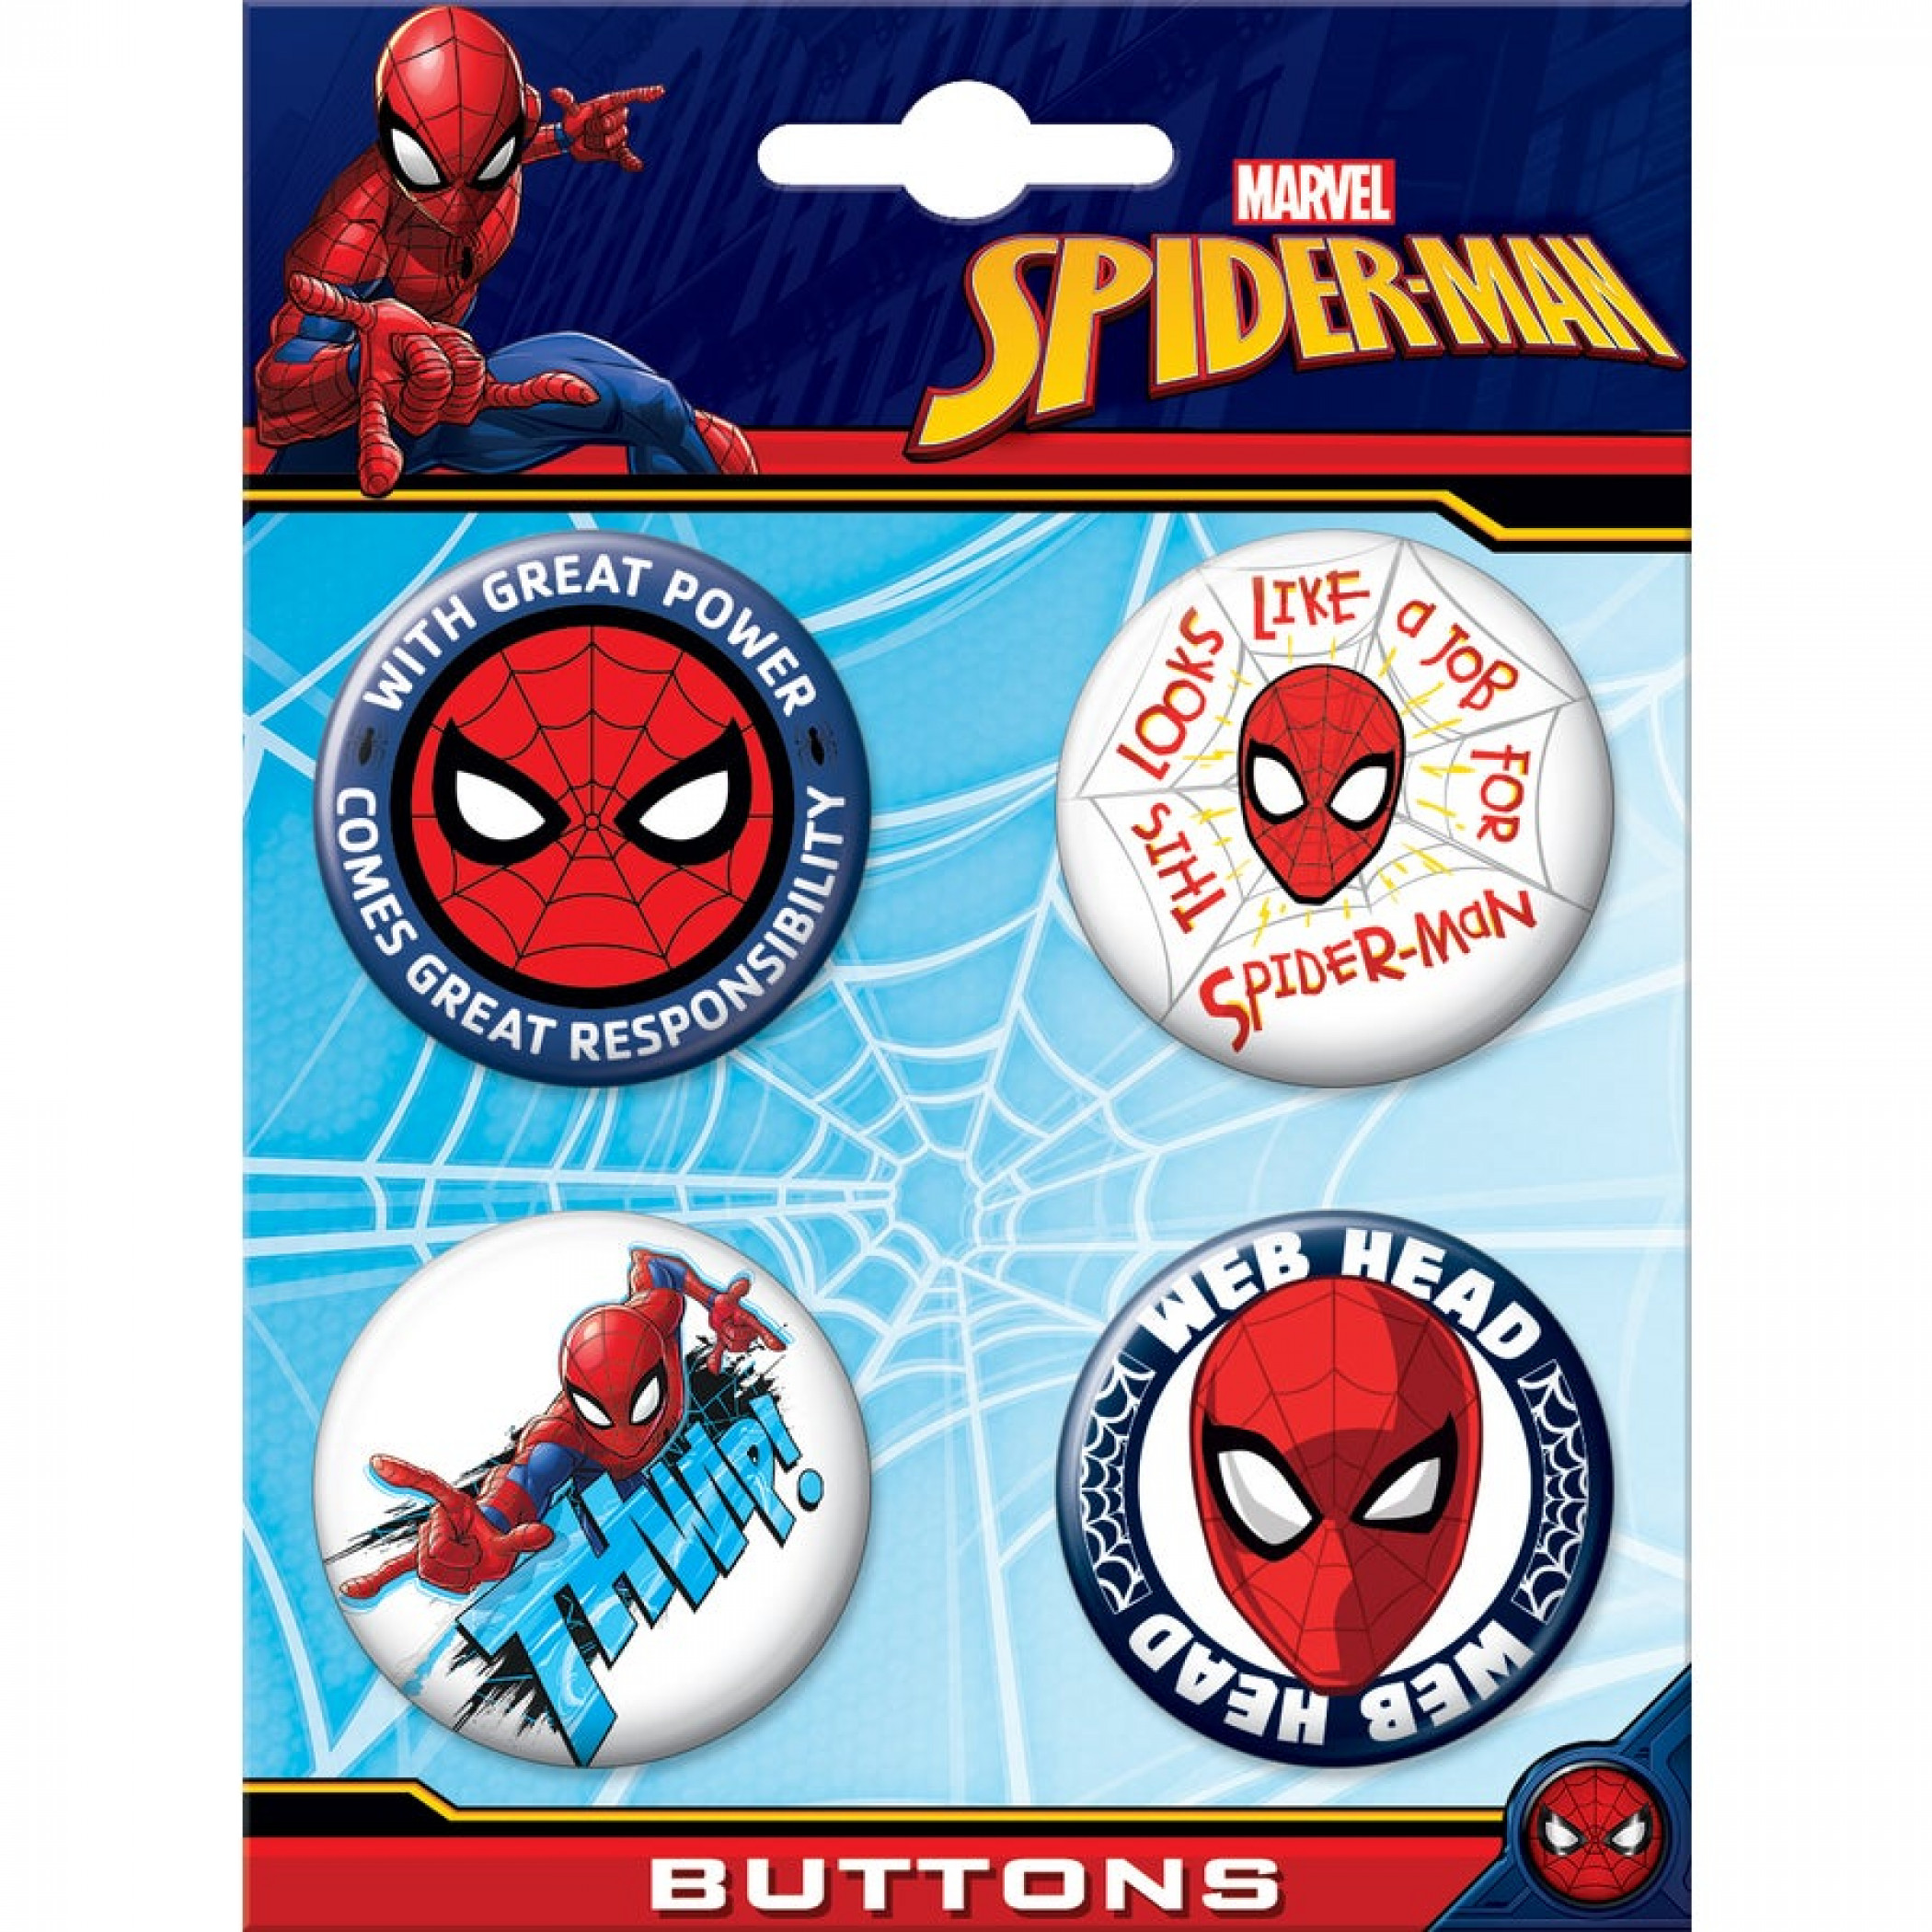 Spider-Man Web Head 4-Piece Button Set